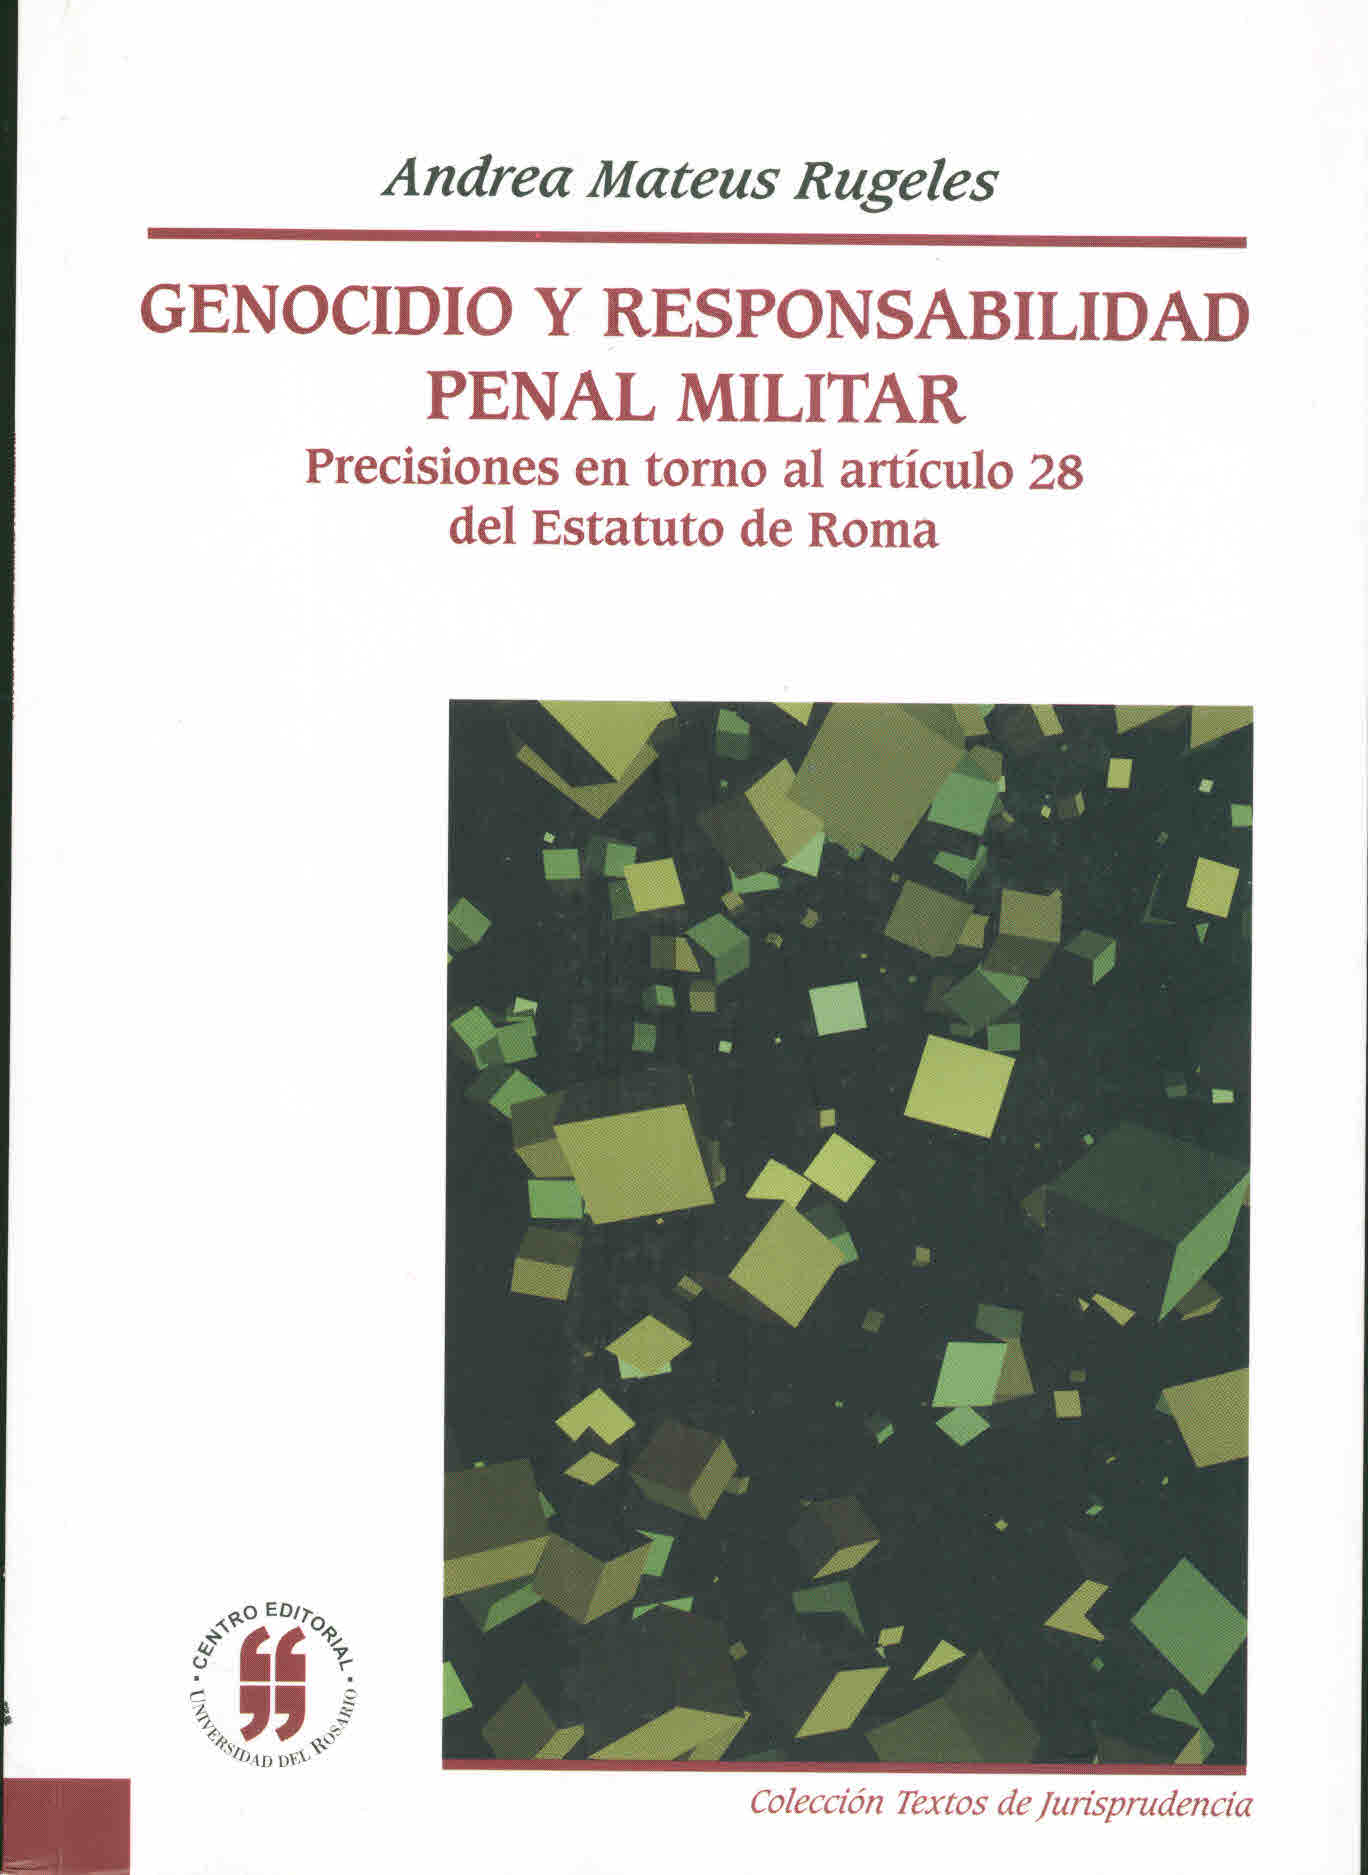 Genocidio y responsabilidad penal militar. Precisiones en torno al artículo 28 del Estatuto de Roma